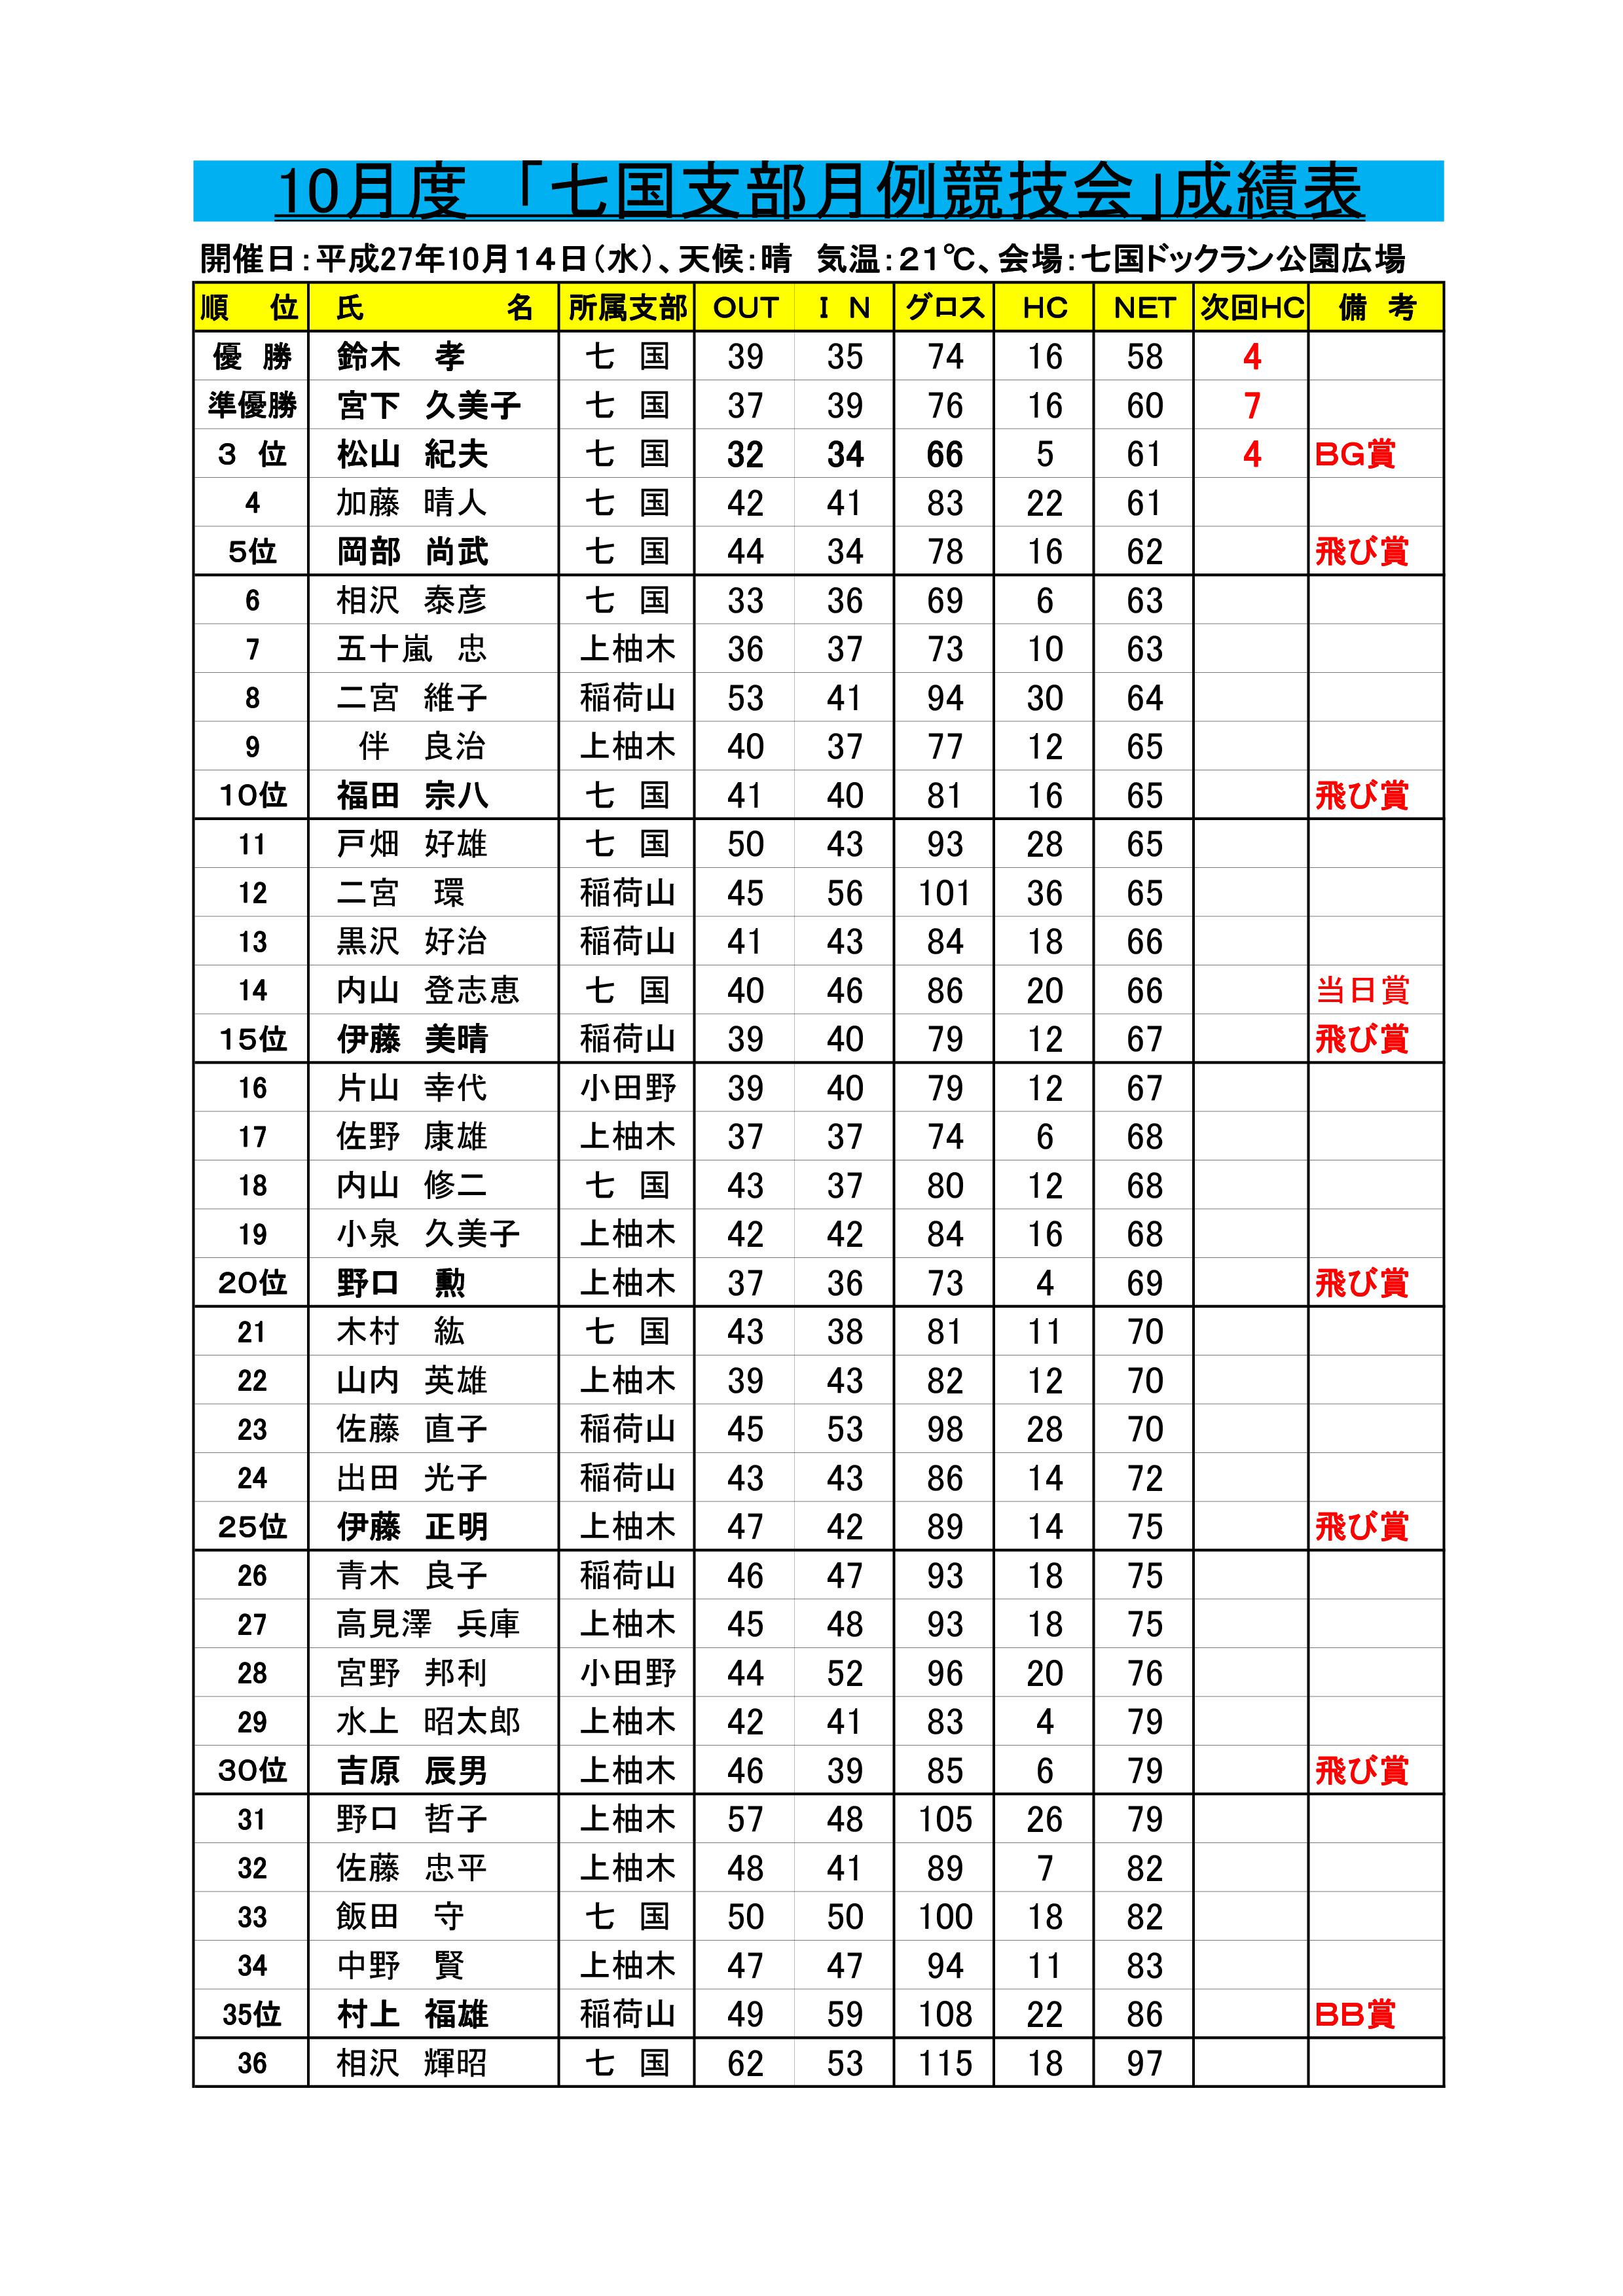 27年度七国支部月例競技会成績表('27.10.14.七国ドックラン公園)